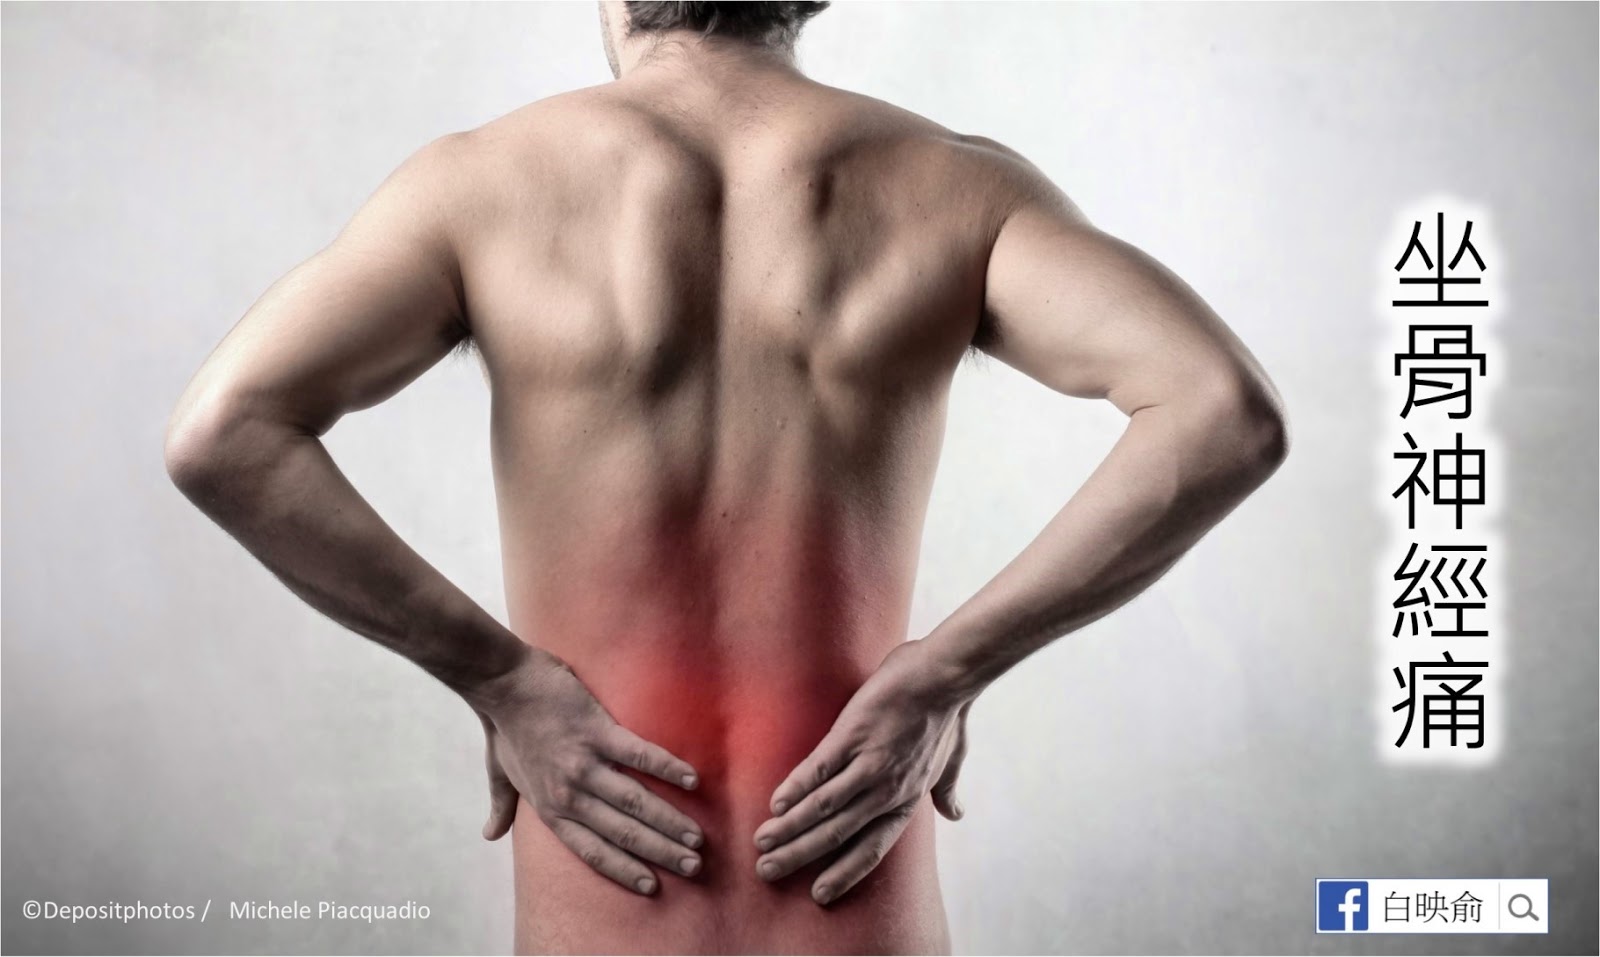 Боли в пояснице тяжесть. Поясница. Воспалительная боль в спине. Спина человека. Картинка спины человека.